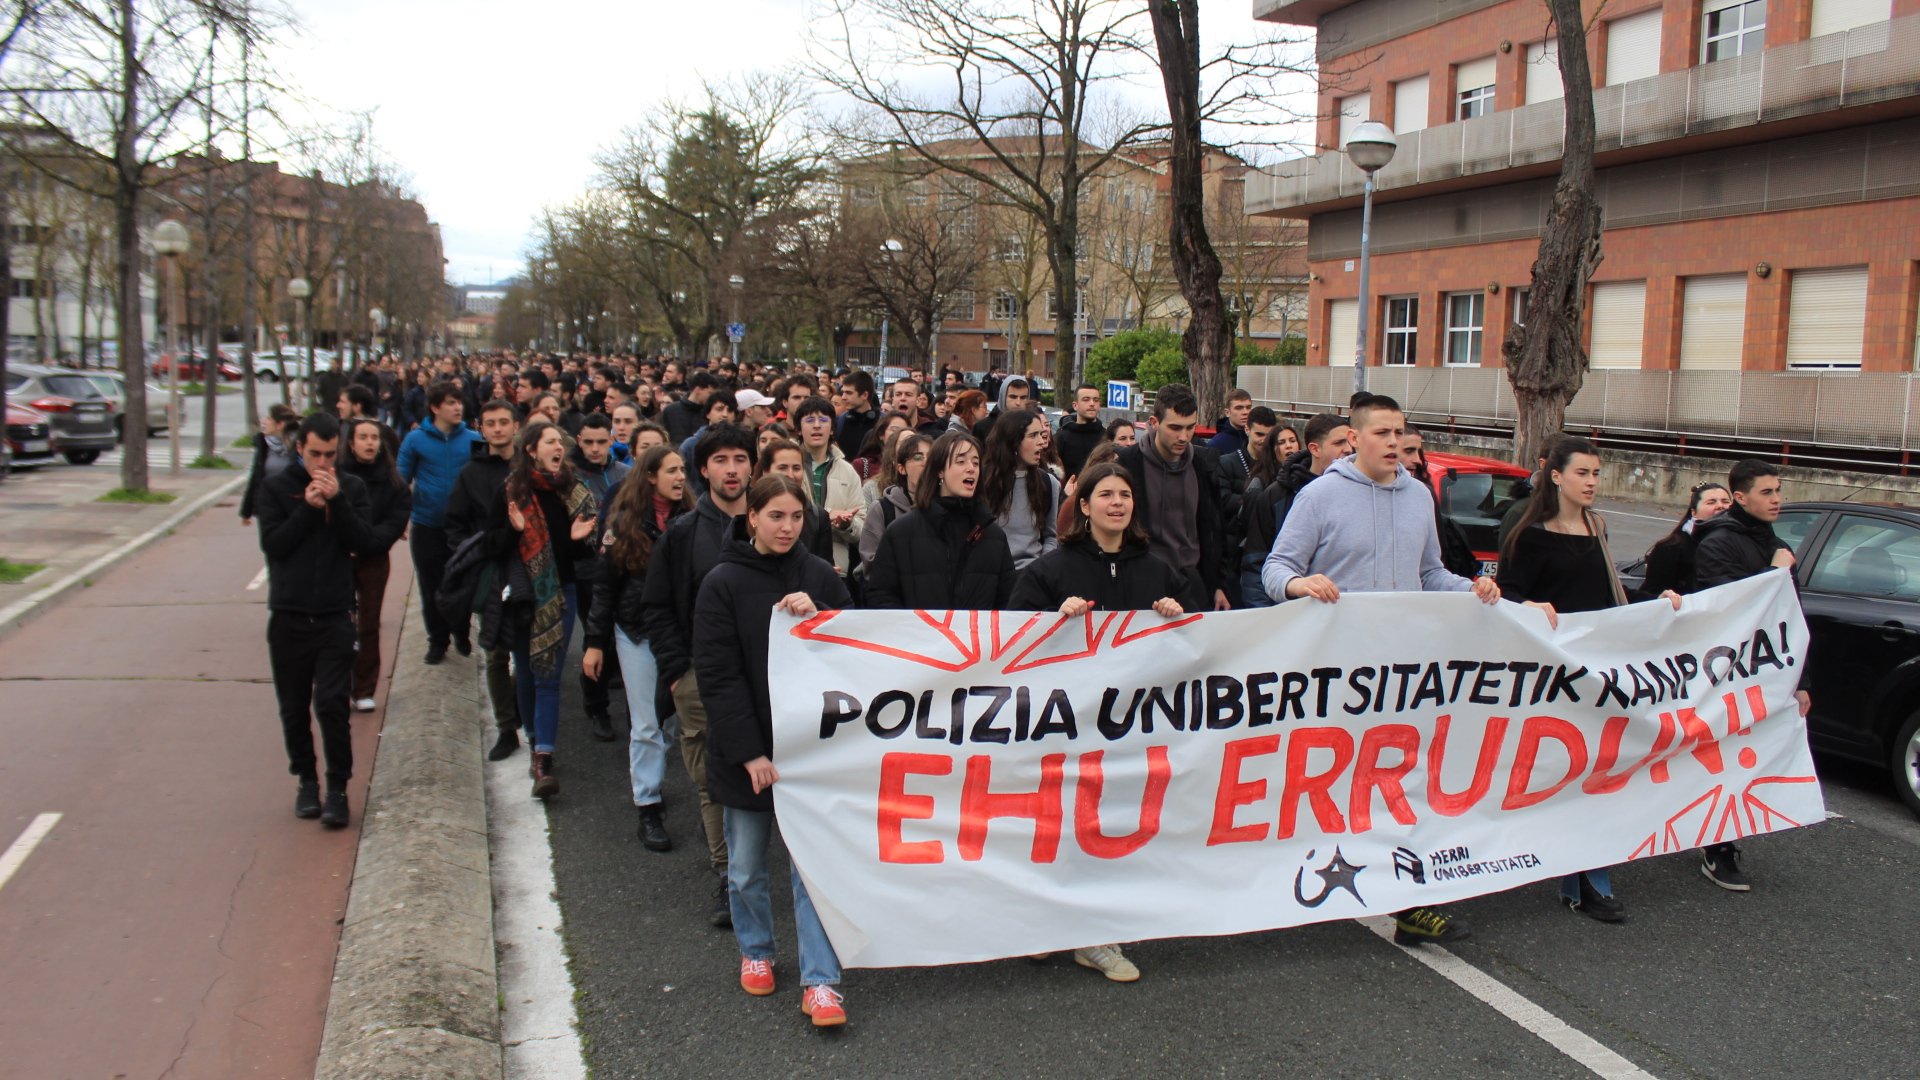 La Ertzaintza desaloja a la fuerza a estudiantes encerrados en la Universidad del País Vasco que denunciaban el actual modelo universitario empresarial y policial